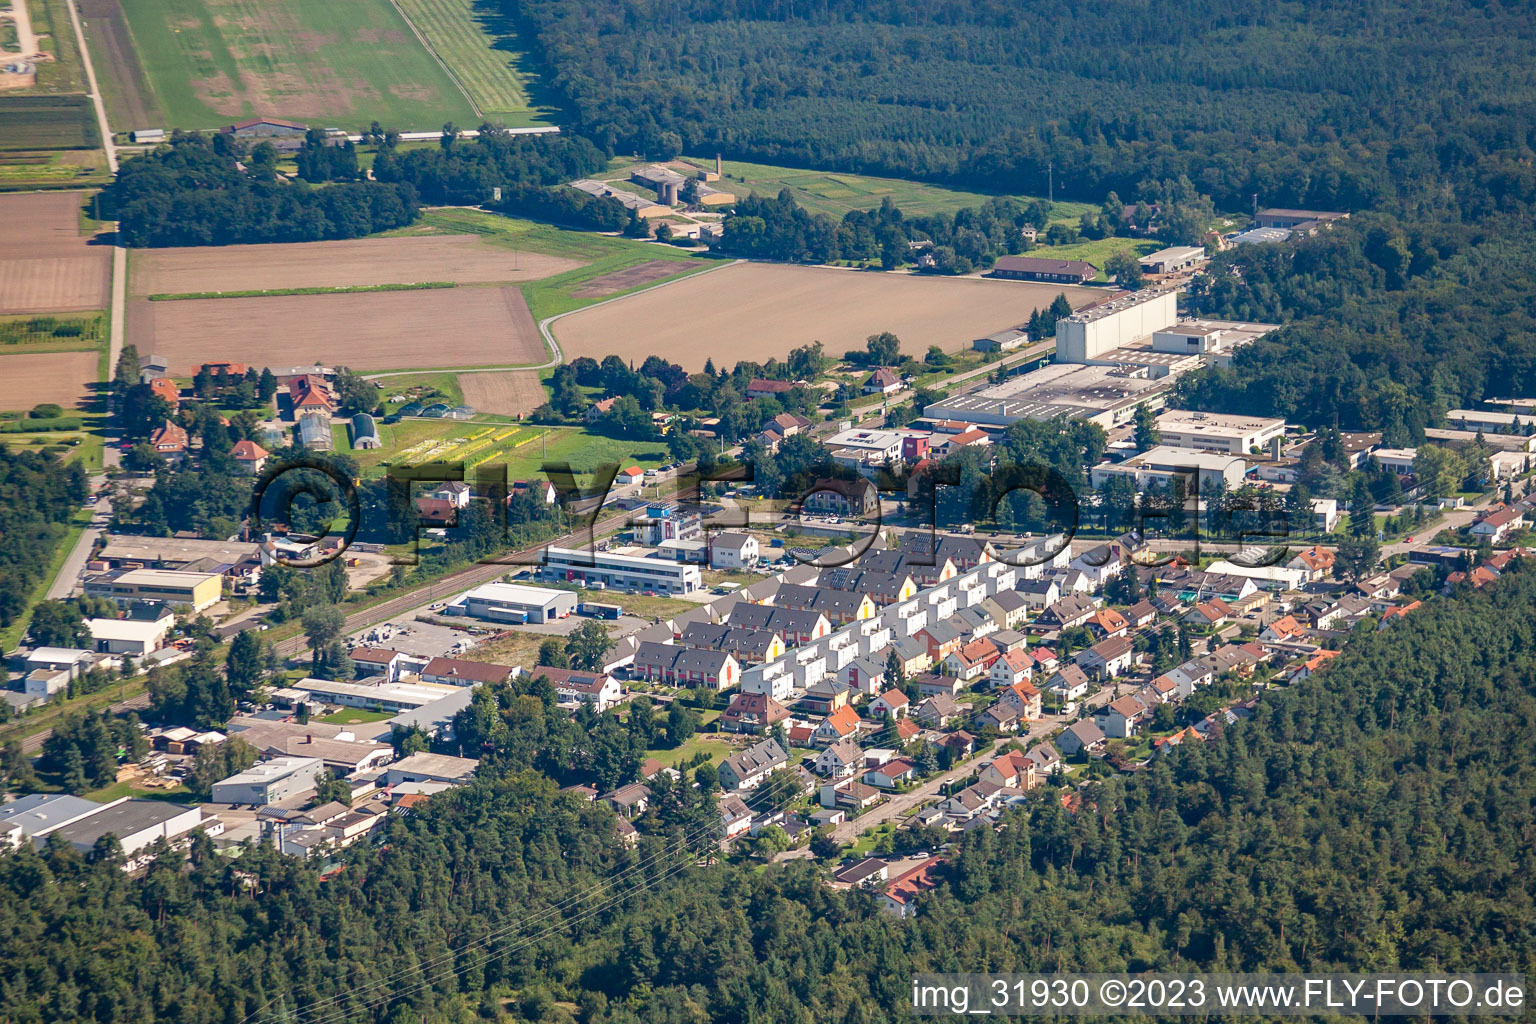 Aerial view of District Silberstreifen in Rheinstetten in the state Baden-Wuerttemberg, Germany